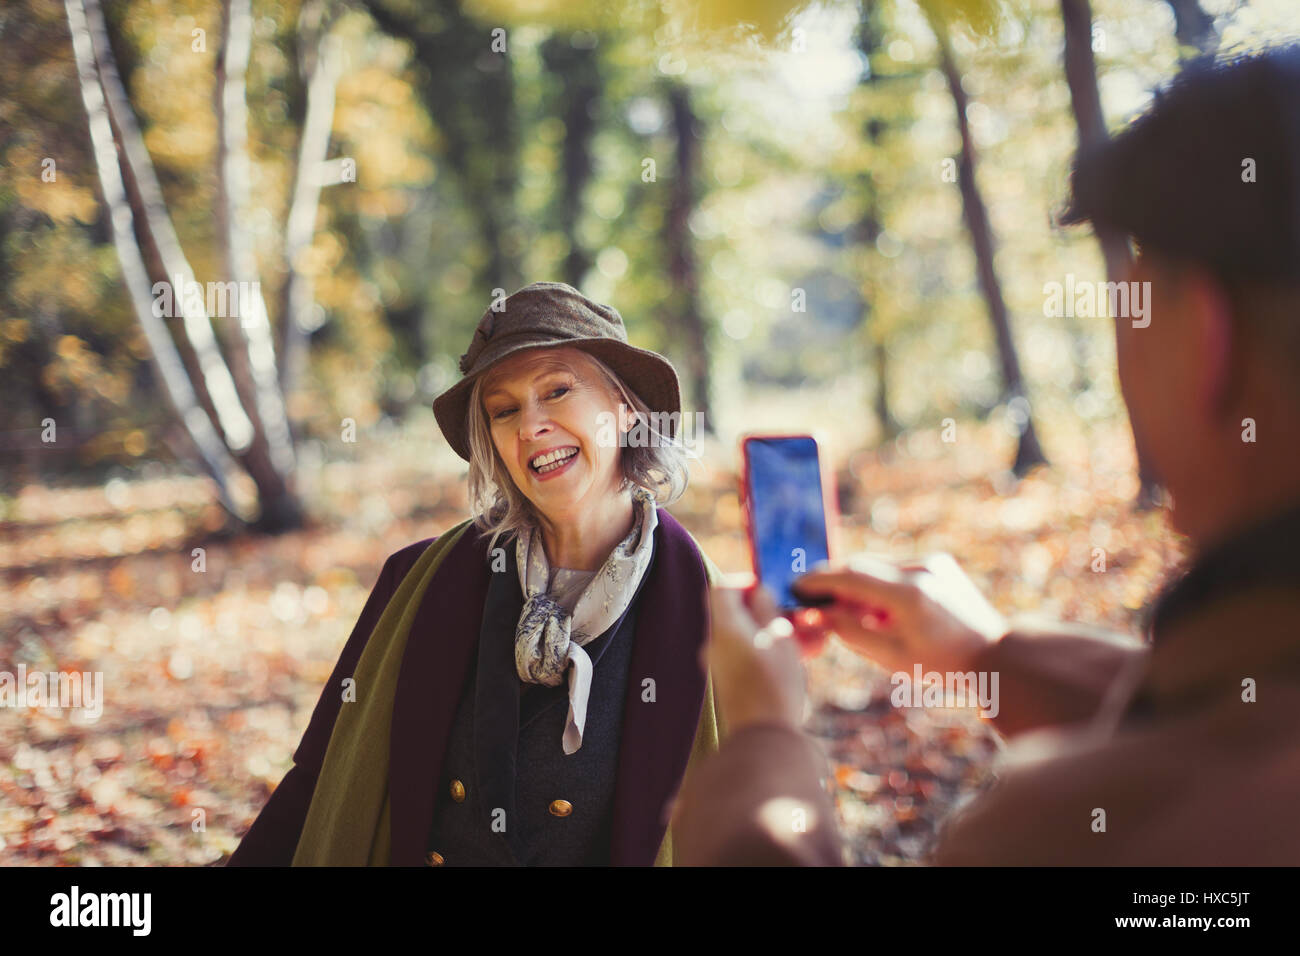 Senior woman ludique photographiée par mari avec camera phone in autumn park Banque D'Images